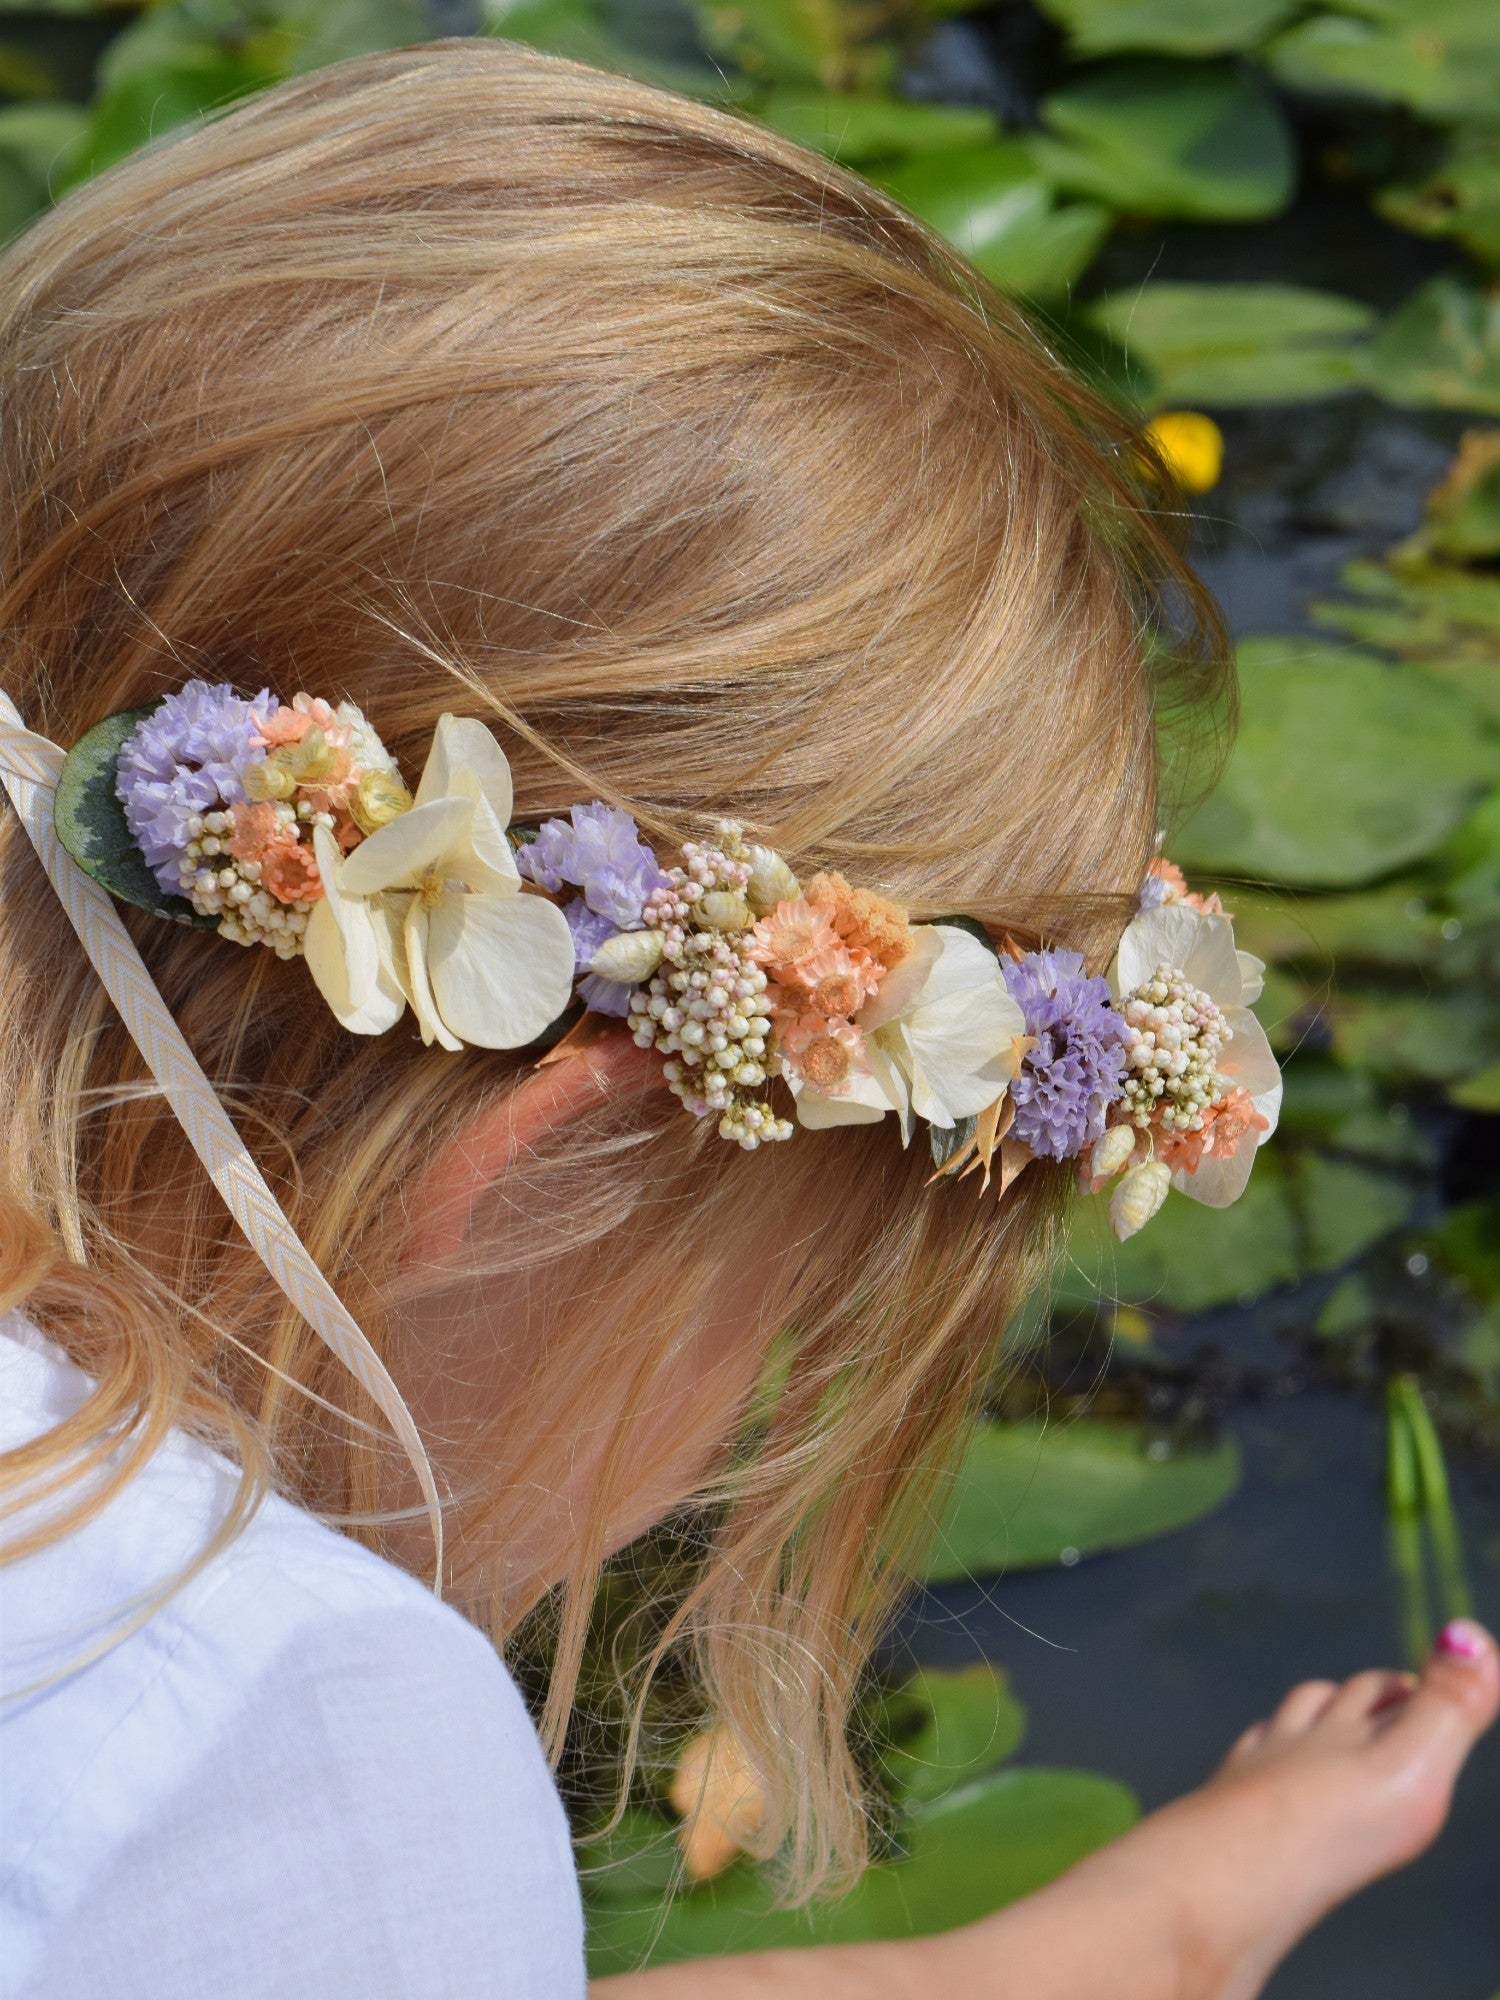 Zara - Flower crown children